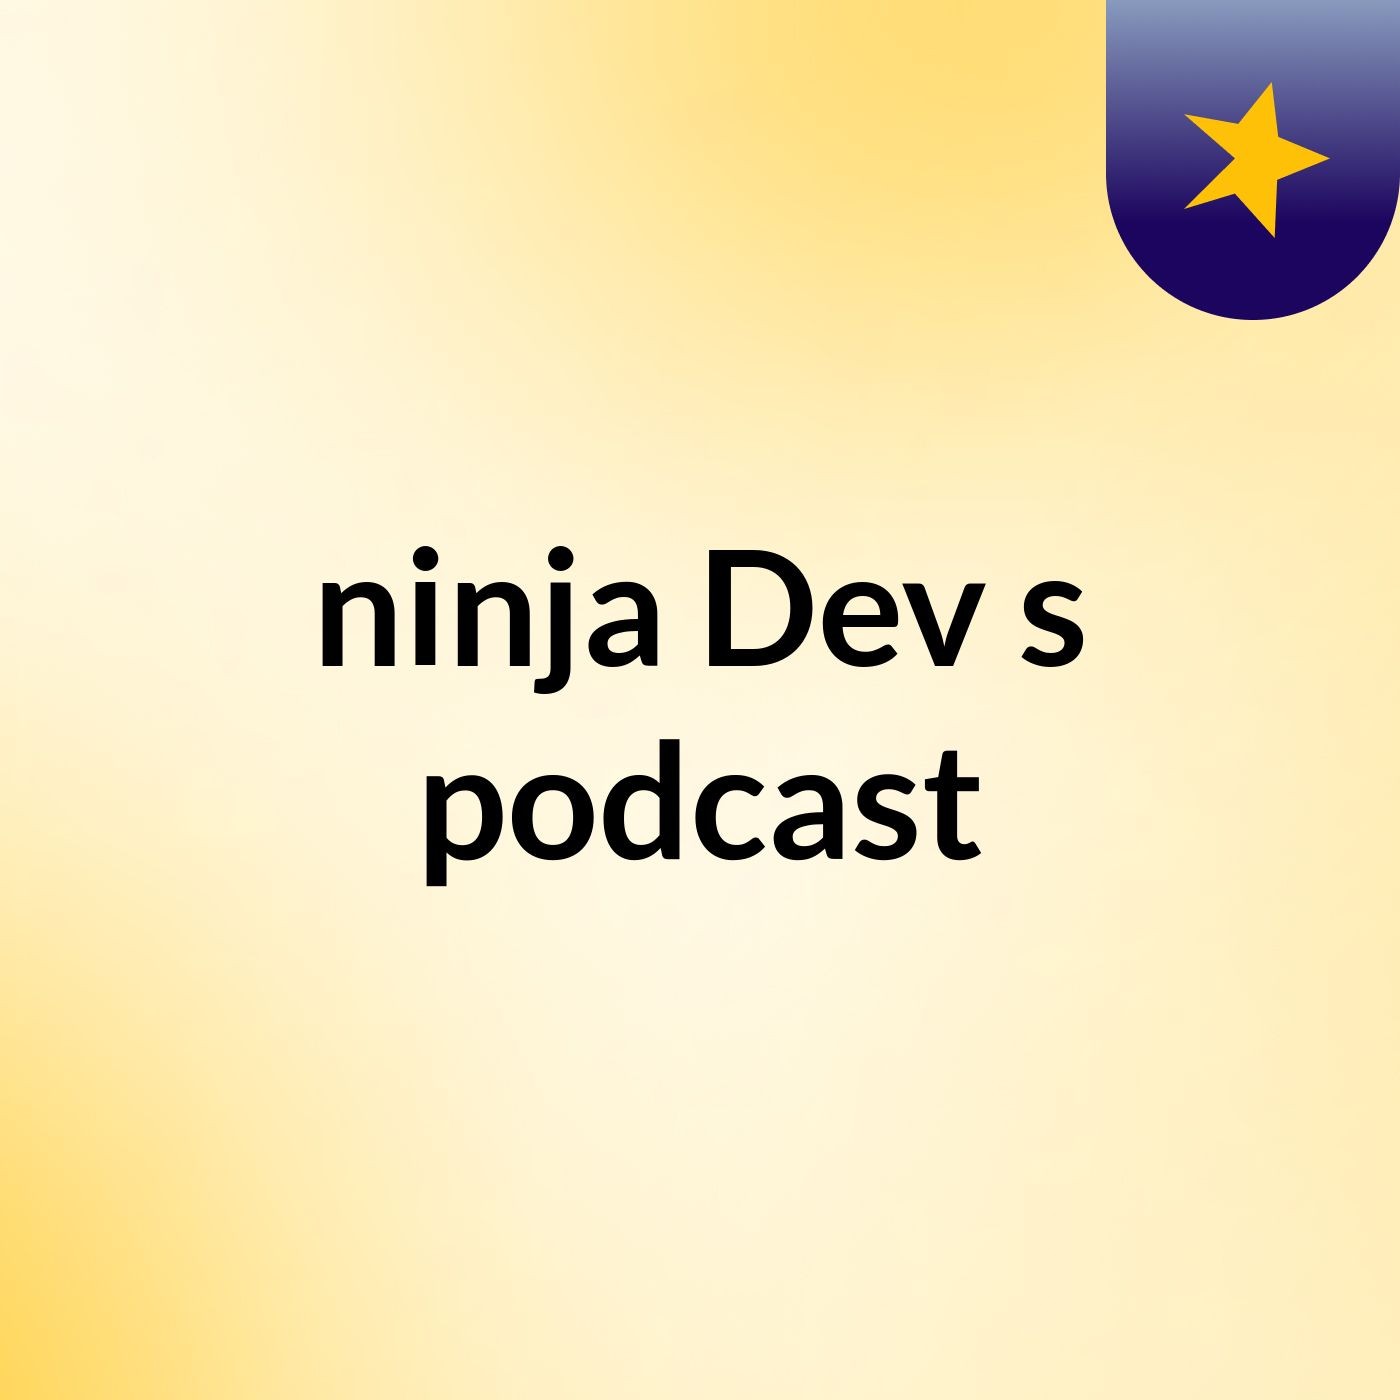 Live 2 - ninja Dev's podcast